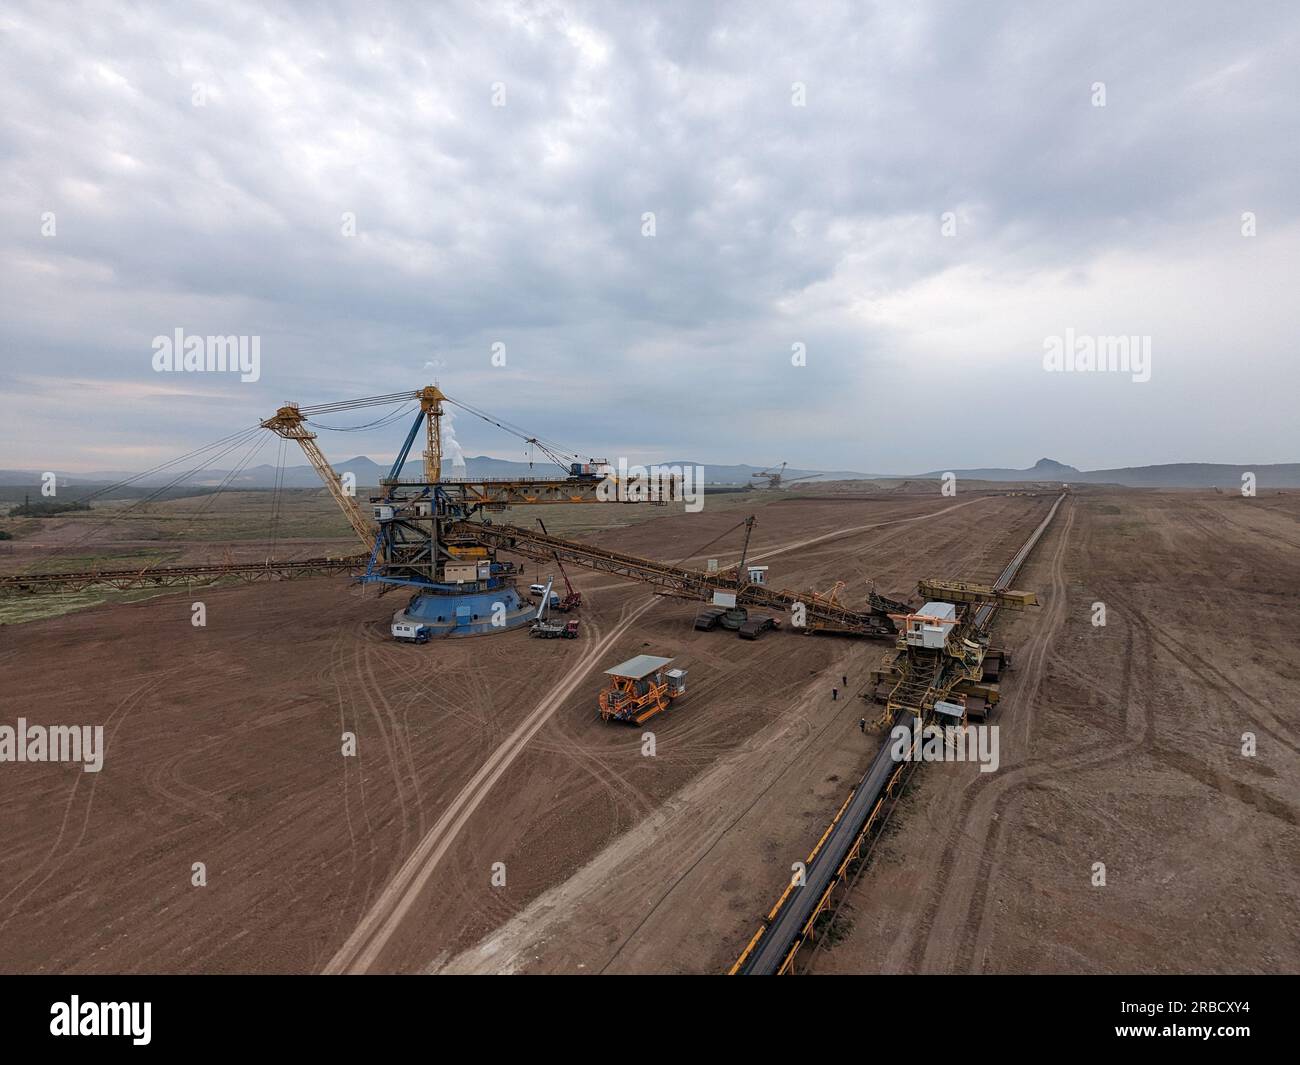 Enormi operazioni di scavo di escavatori gommati a benna nella miniera di carbone nella maggior parte delle regioni della repubblica Ceca, Europa, macchinari pesanti in un paesaggio rivisitato Foto Stock